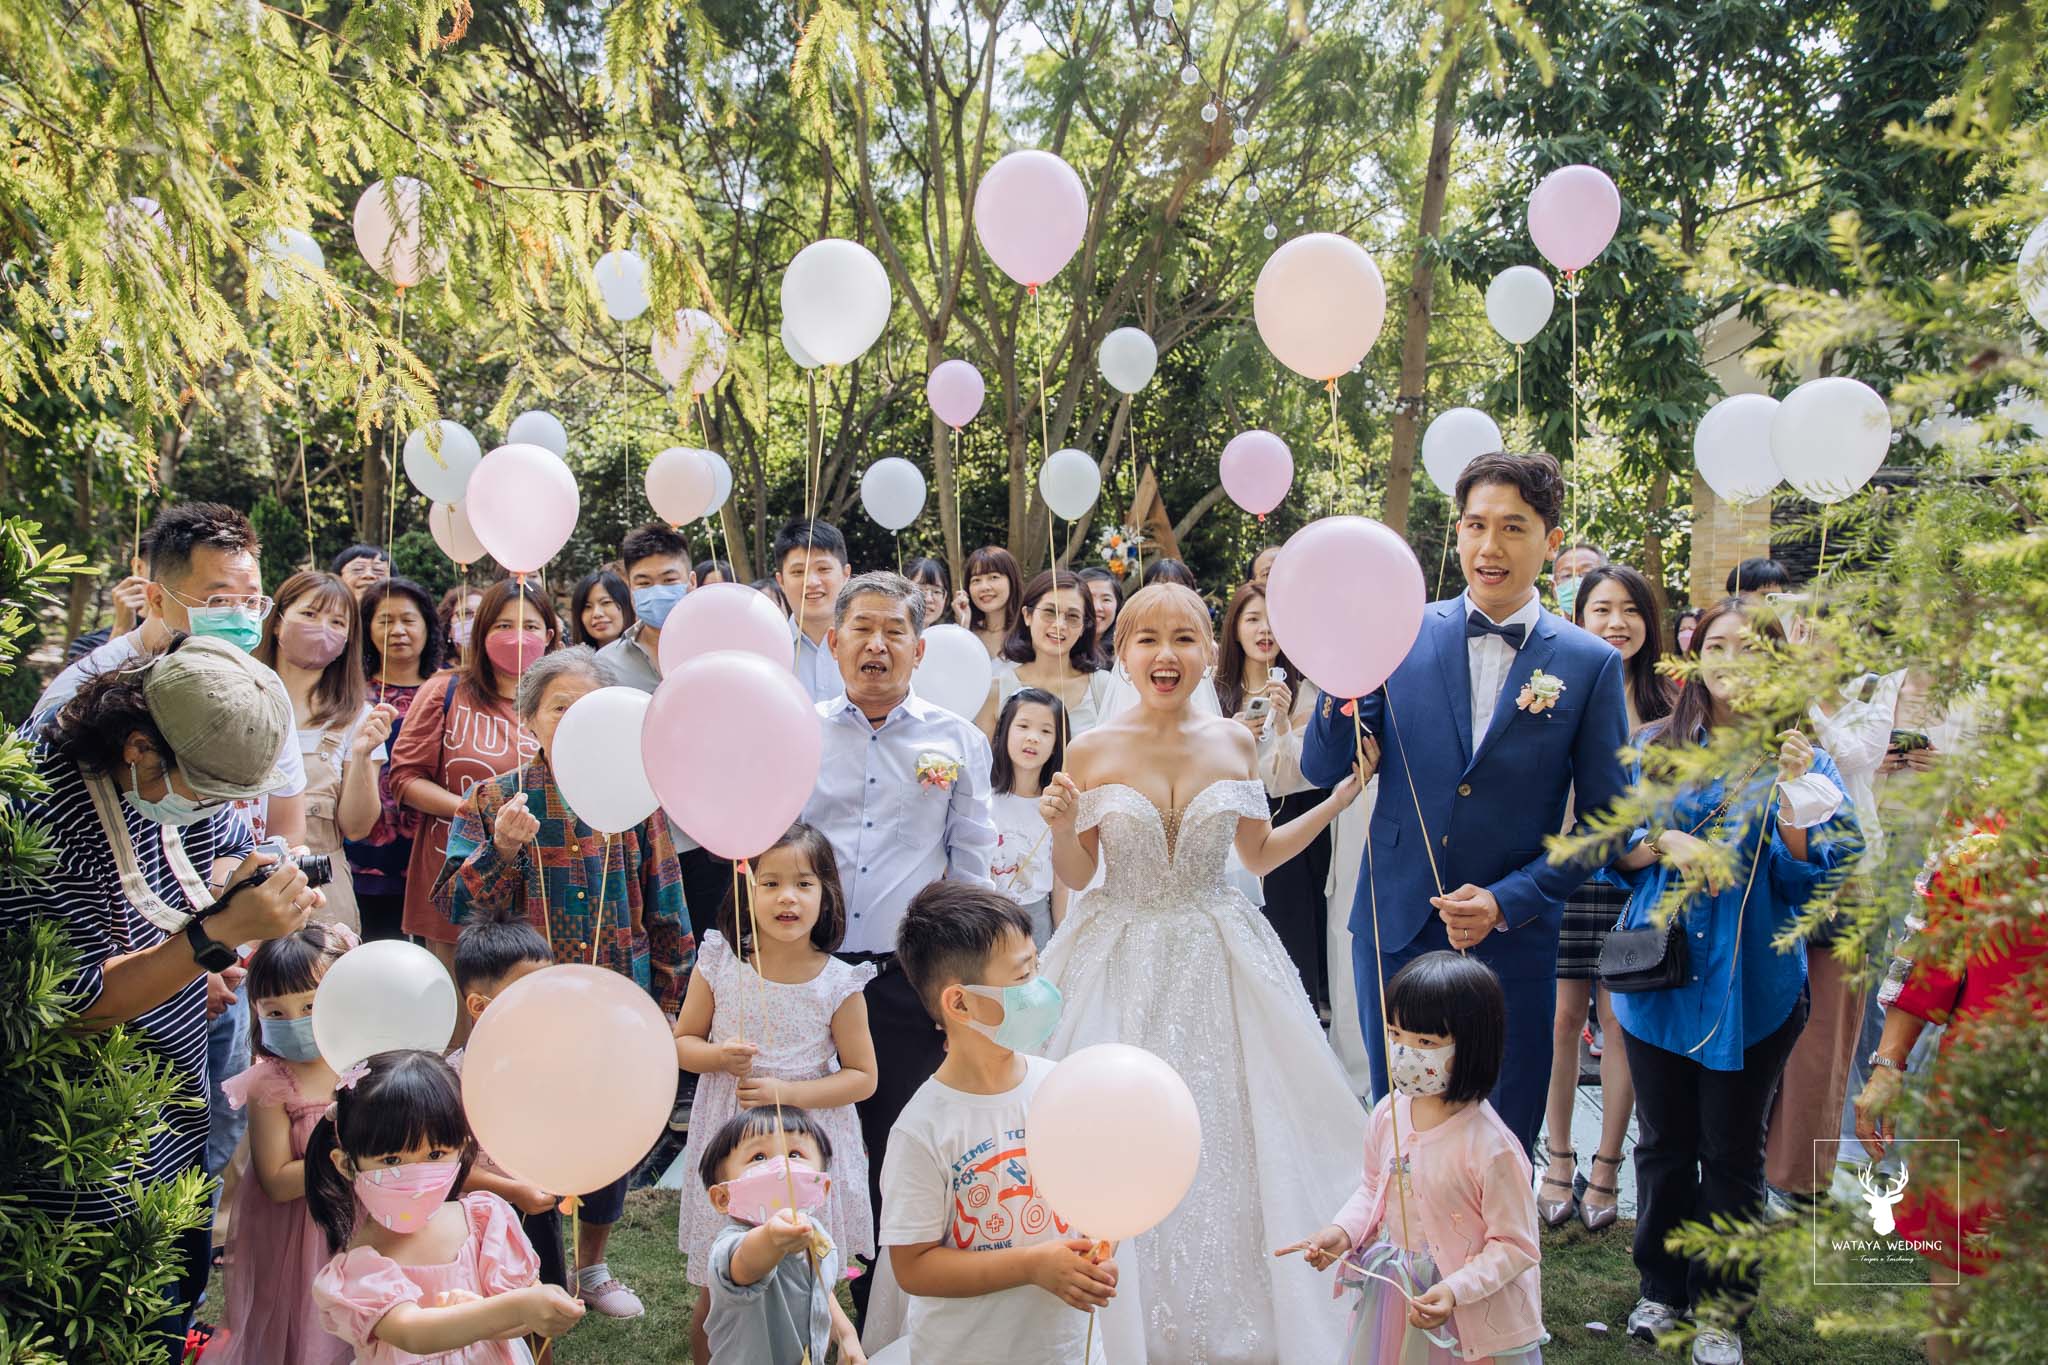 台中綿谷婚禮平面攝影 (42)